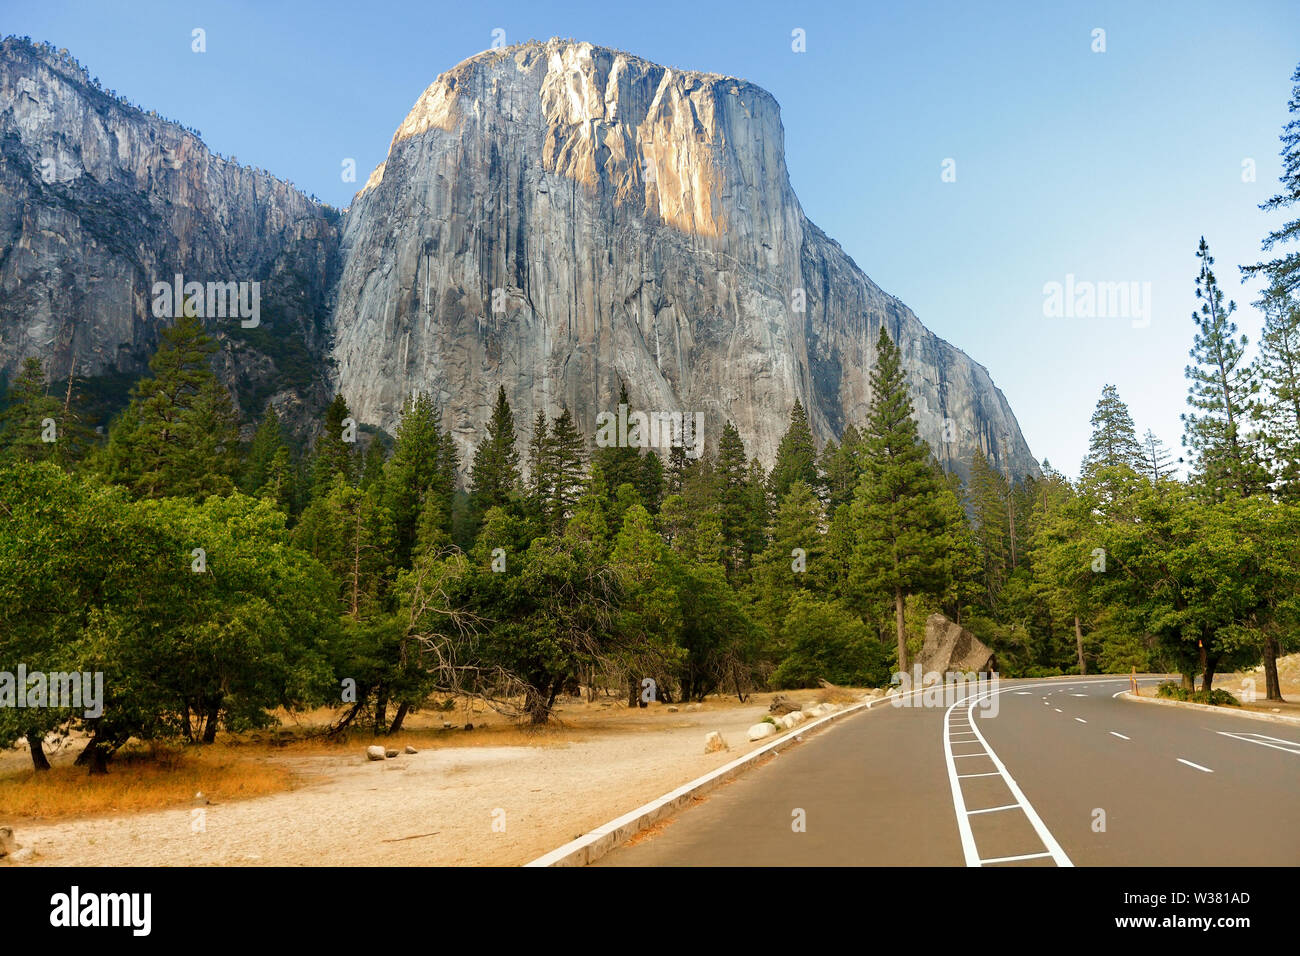 El Capitan Gebirgsbildung und Straße durch den Yosemite National Park USA. Road Trip in die Berge Landschaft in Kalifornien, Wald und Berge bei Sonnenuntergang im Sommer. Stockfoto